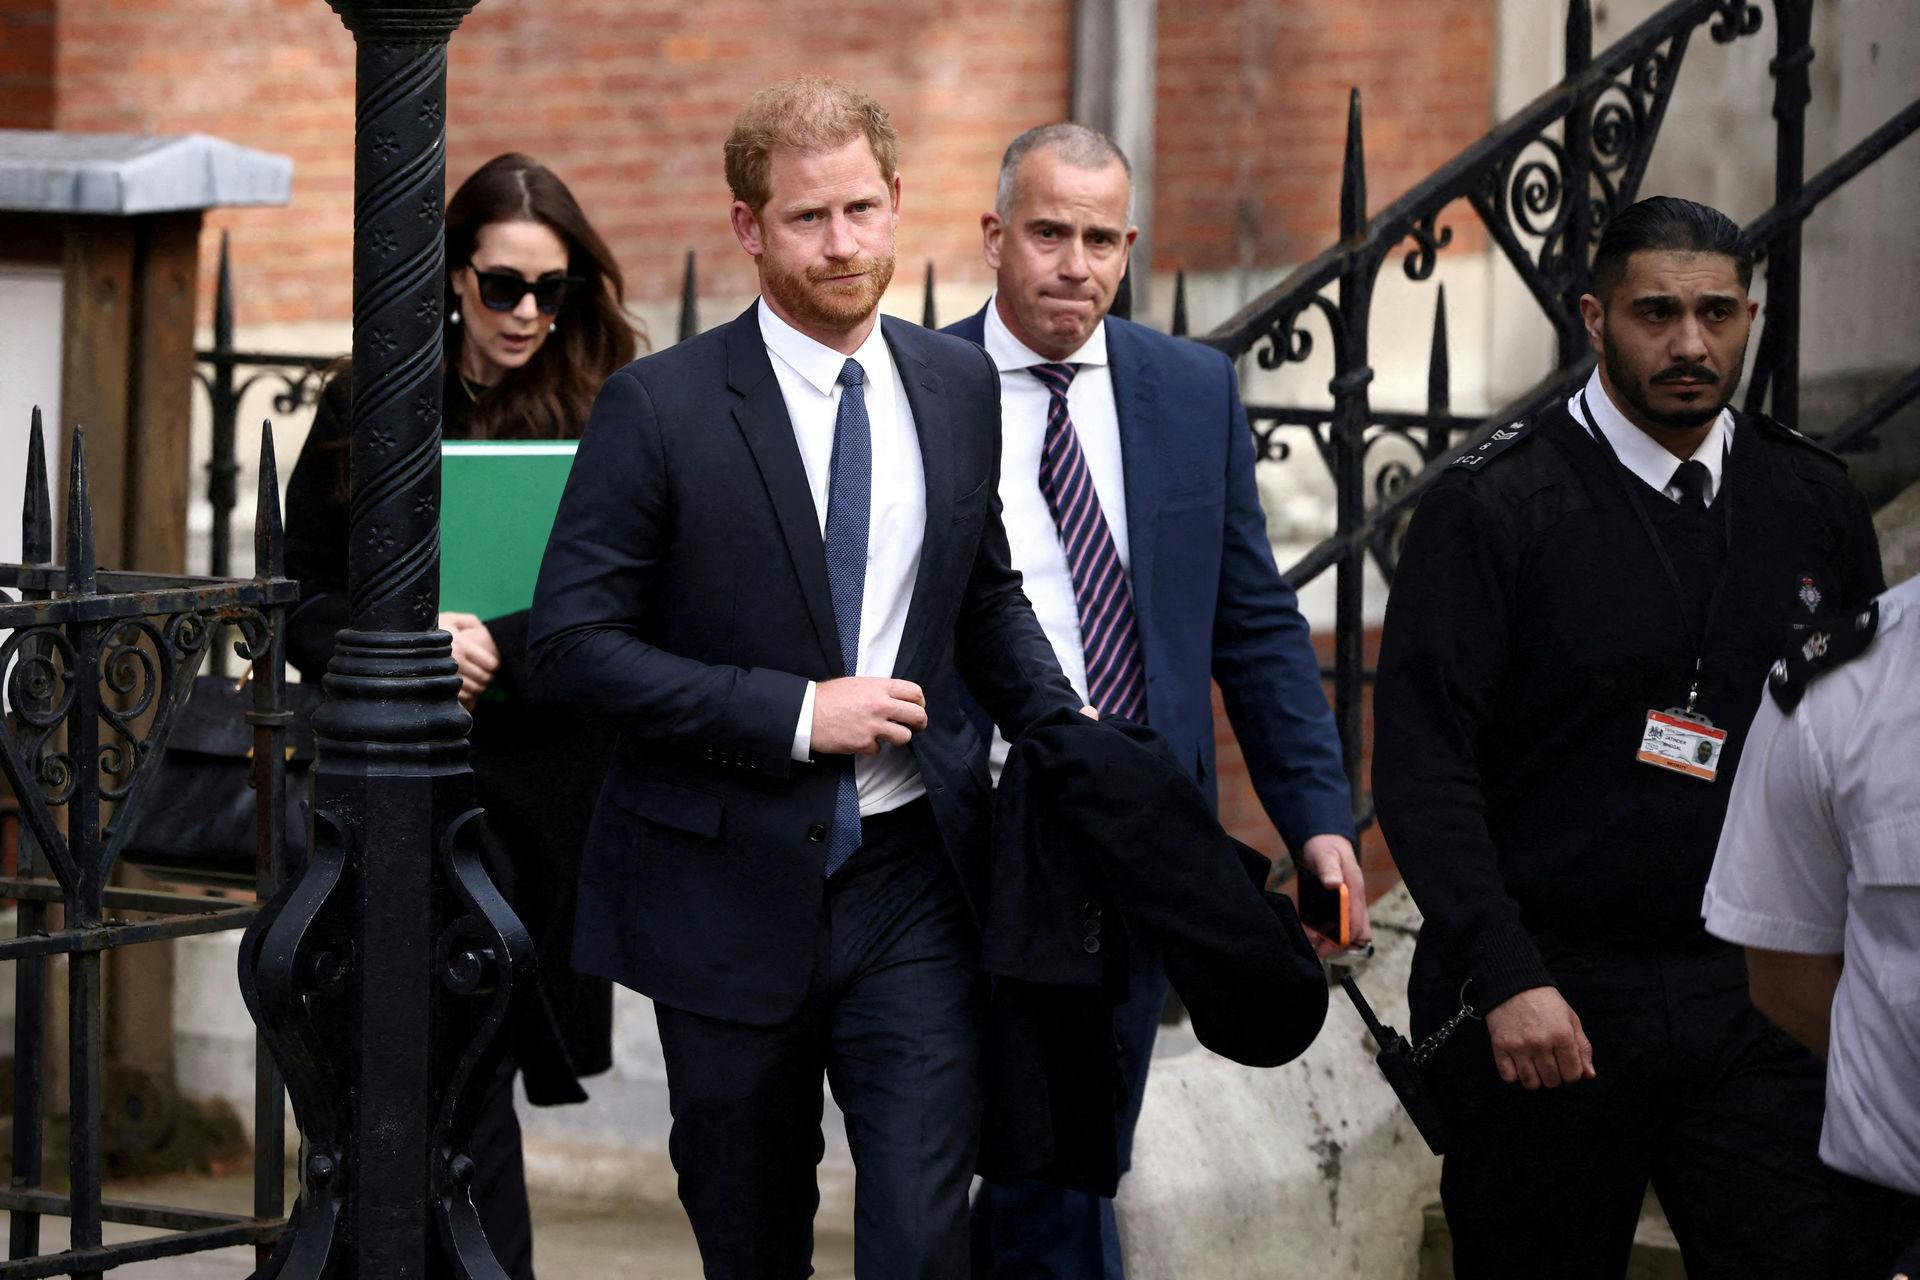 Prins Harry er vant til at blive passet på af bevæbnede "overfrakker", når han og familien bevæger sig rundt i det offentlige rum.